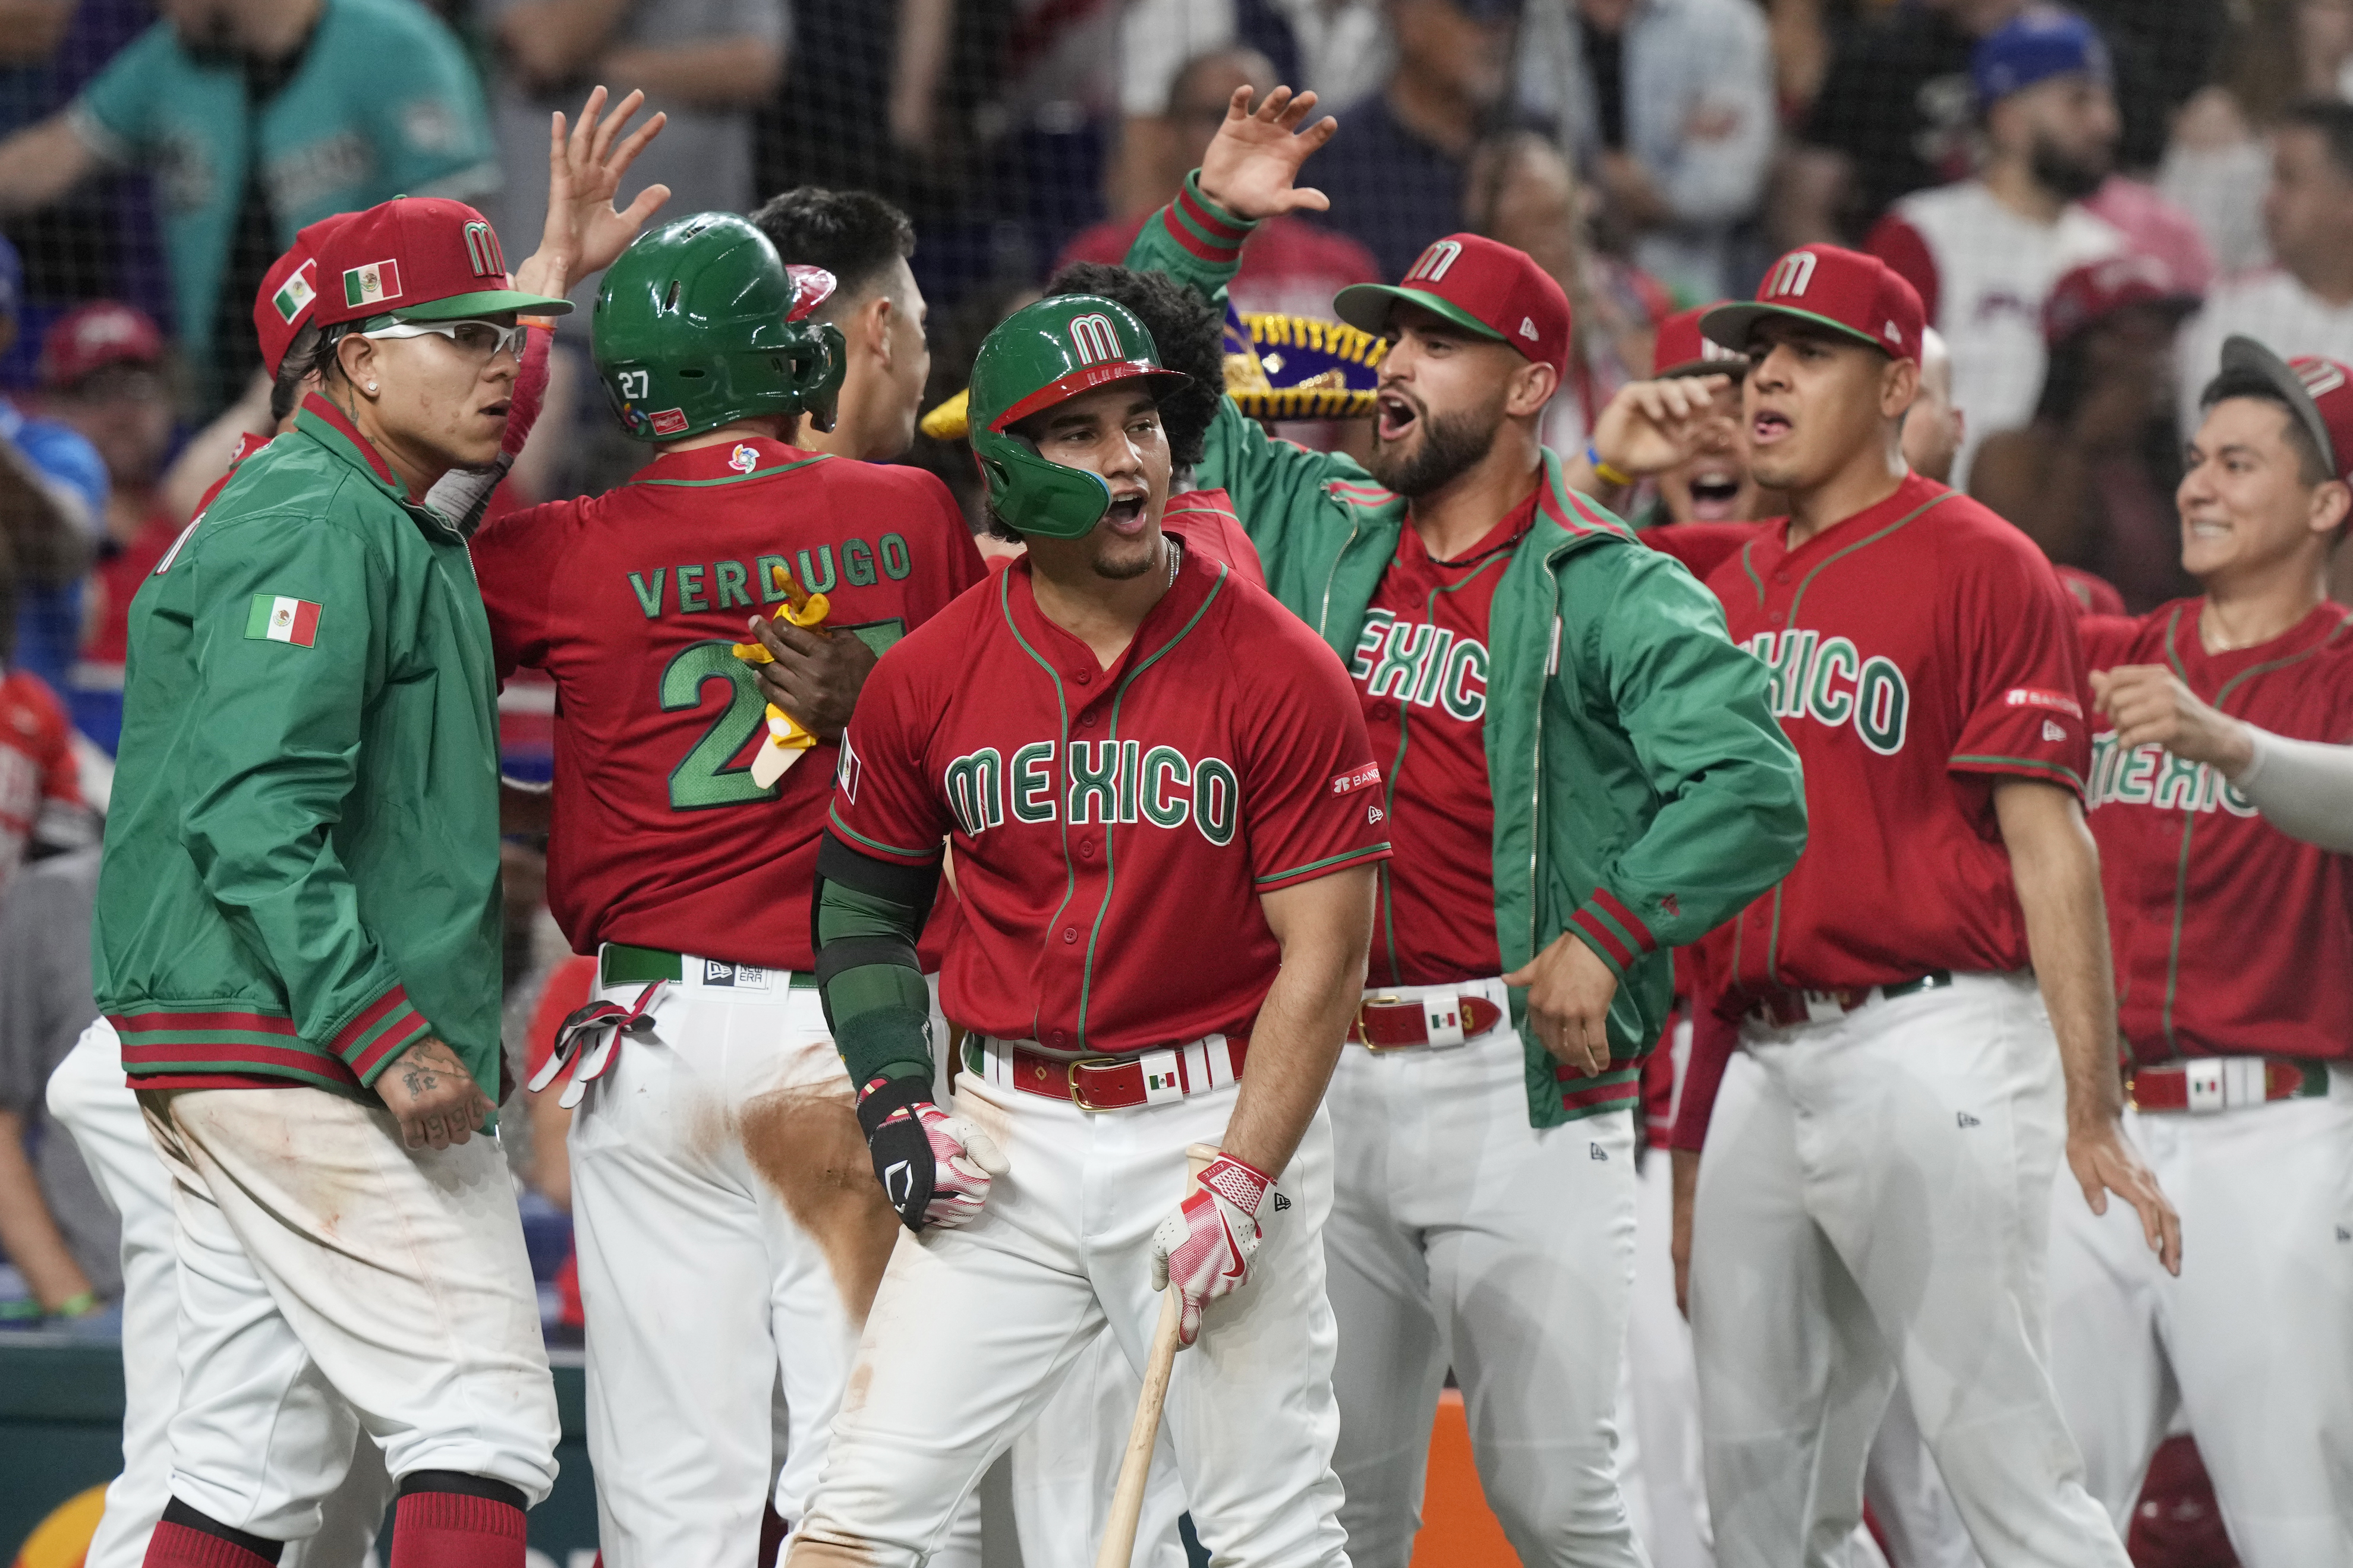 El equipo mexicano festeja con Alex Verdugo (27) después de que anotara carrera en la séptima entrada en el juego de béisbol en contra de Puerto Rico en el Clásico Mundial de Béisbol, el viernes 17 marzo de 2023, en Miami. (AP Photo/Marta Lavandier)